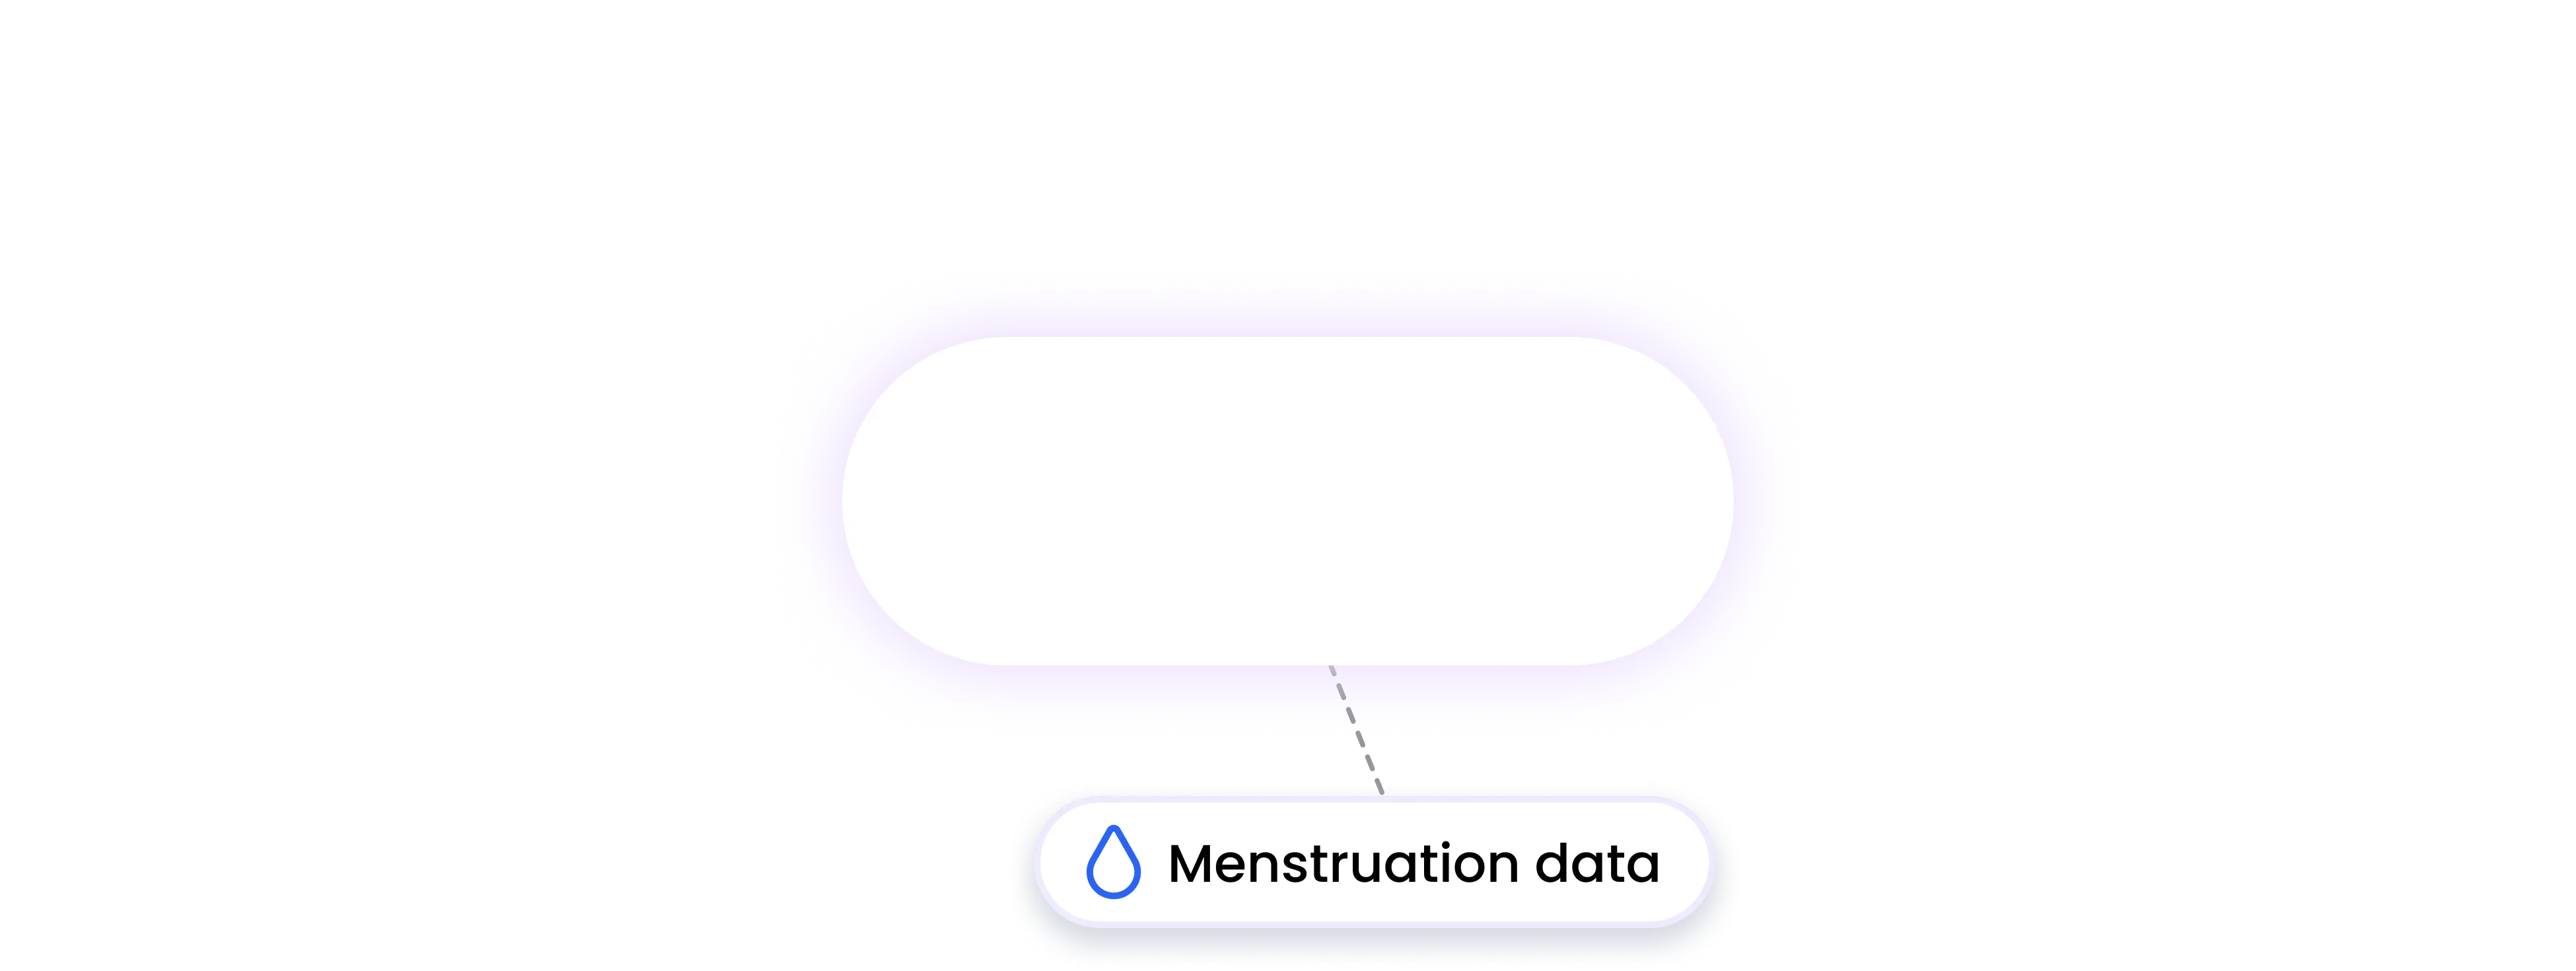 inbody integration MENSTRUATION data